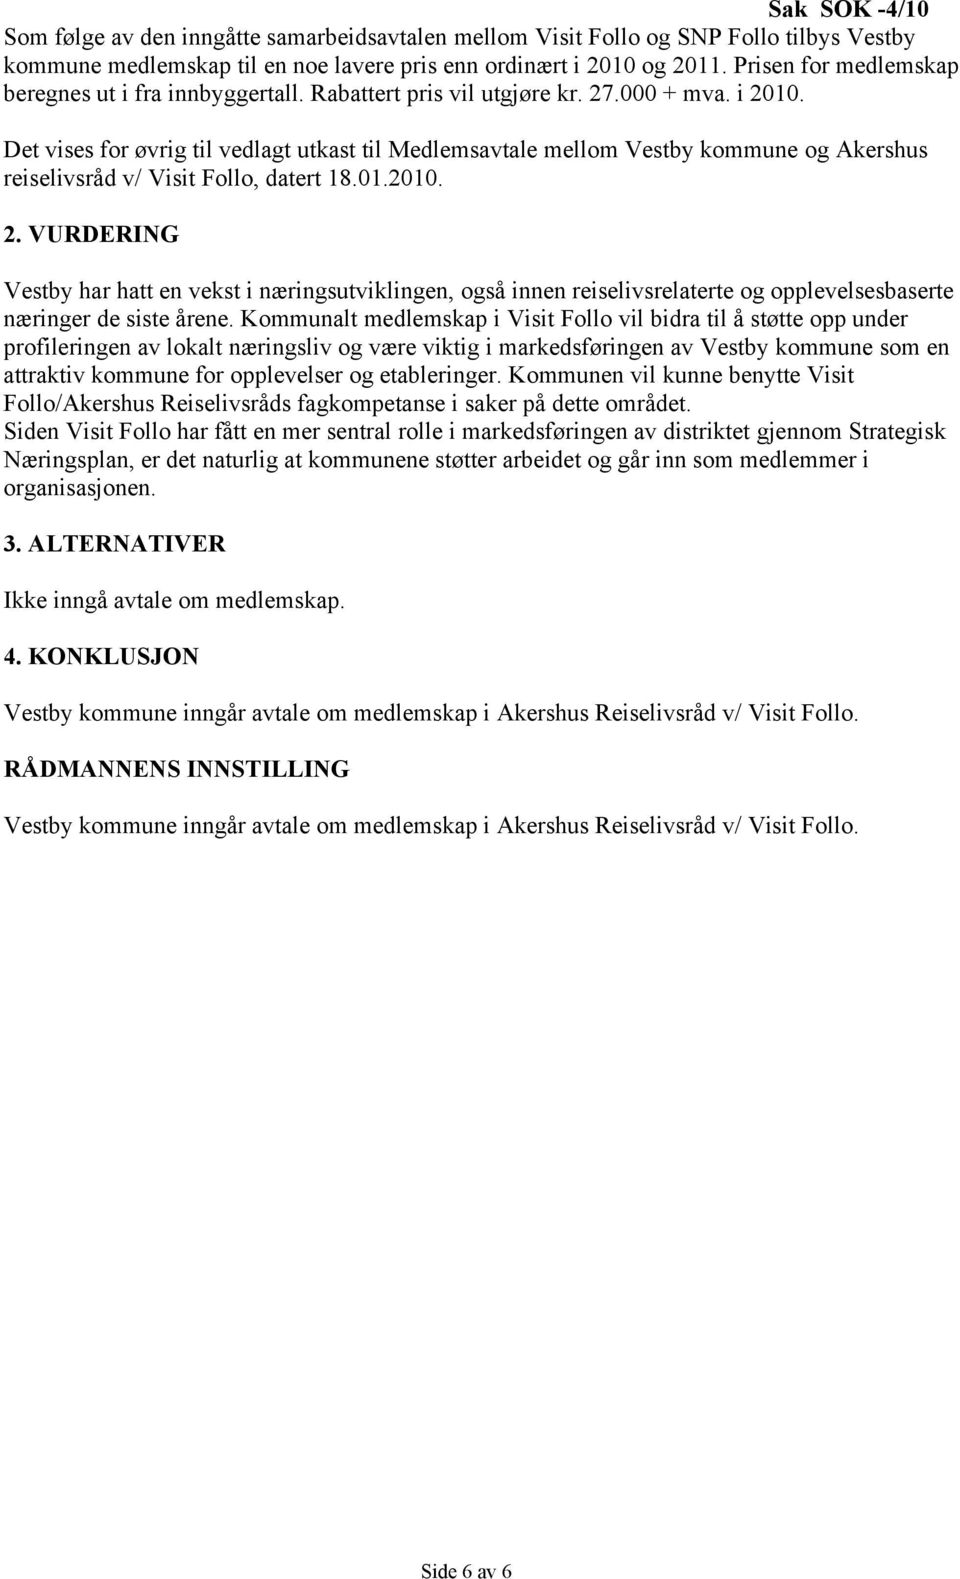 Det vises for øvrig til vedlagt utkast til Medlemsavtale mellom Vestby kommune og Akershus reiselivsråd v/ Visit Follo, datert 18.01.2010. 2.